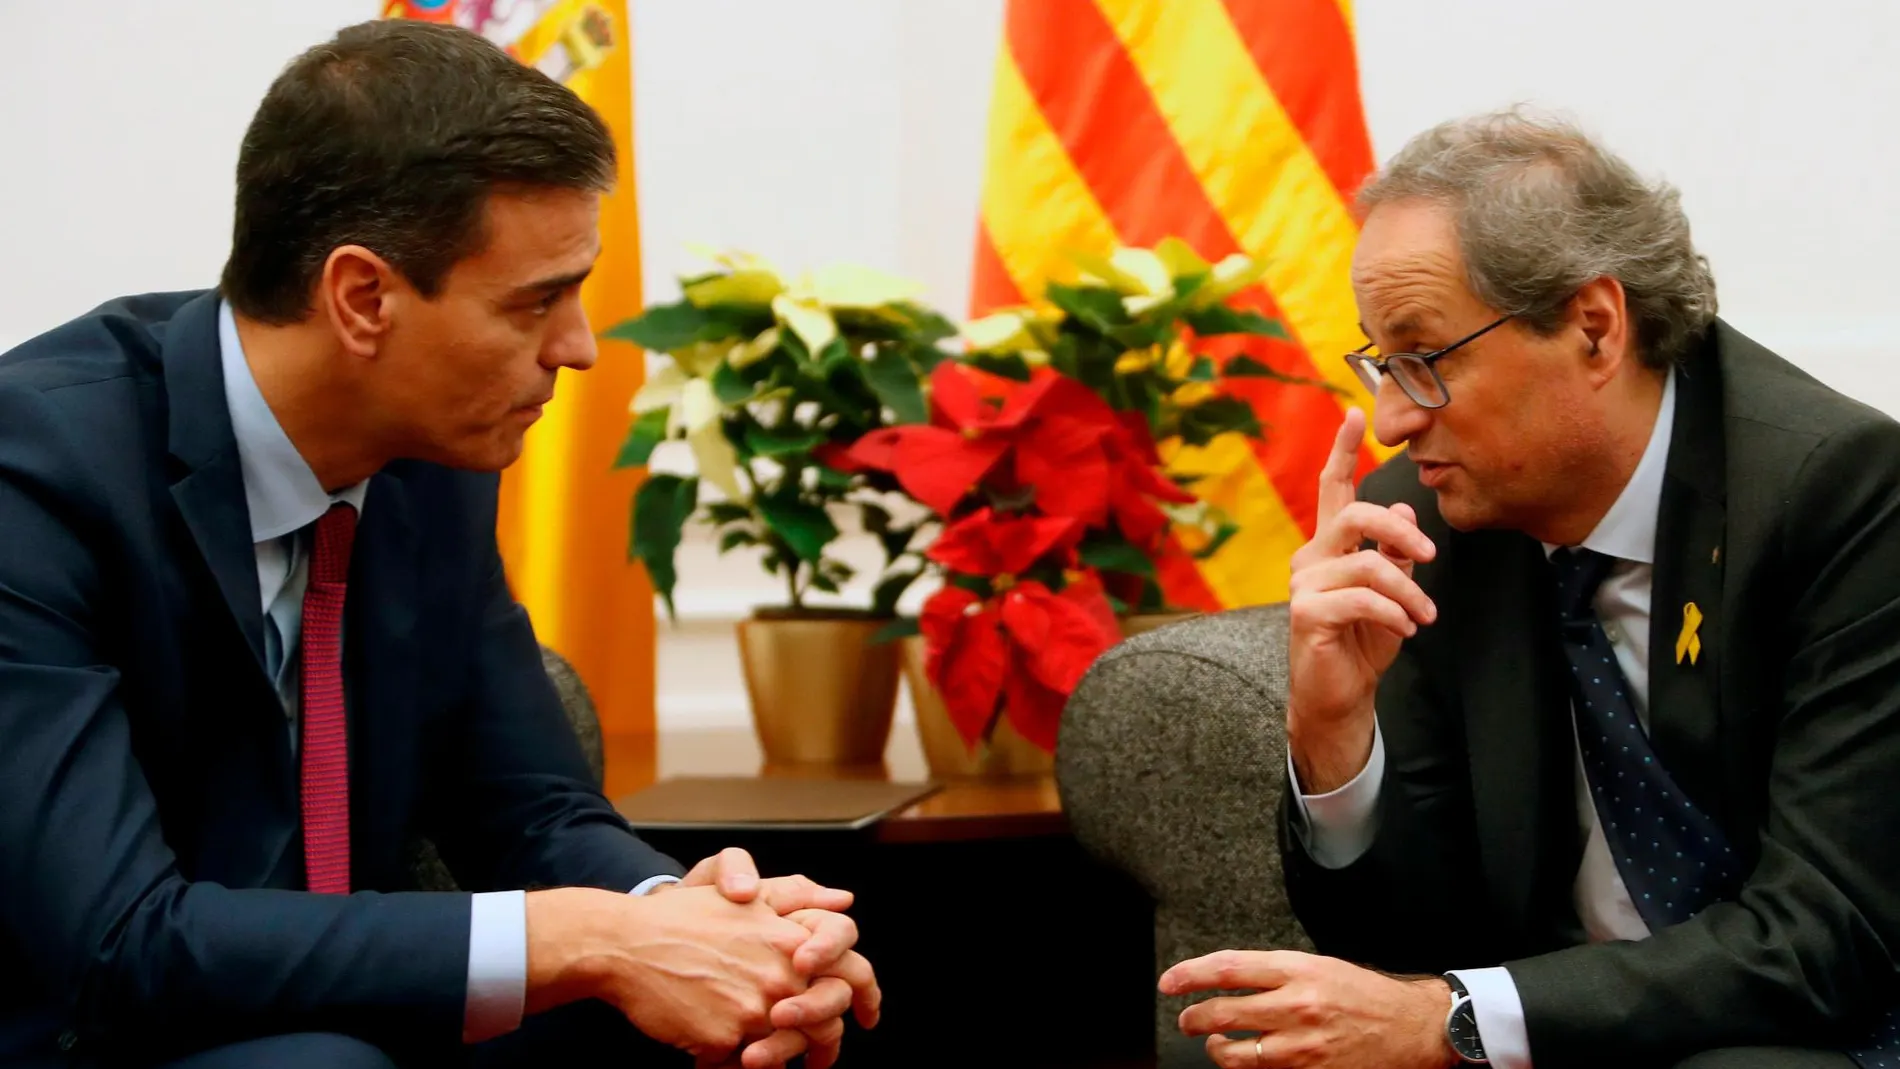 La Generalitat coloca dos plantas amarillas en la foto oficial y Moncloa contrarresta con una roja delante